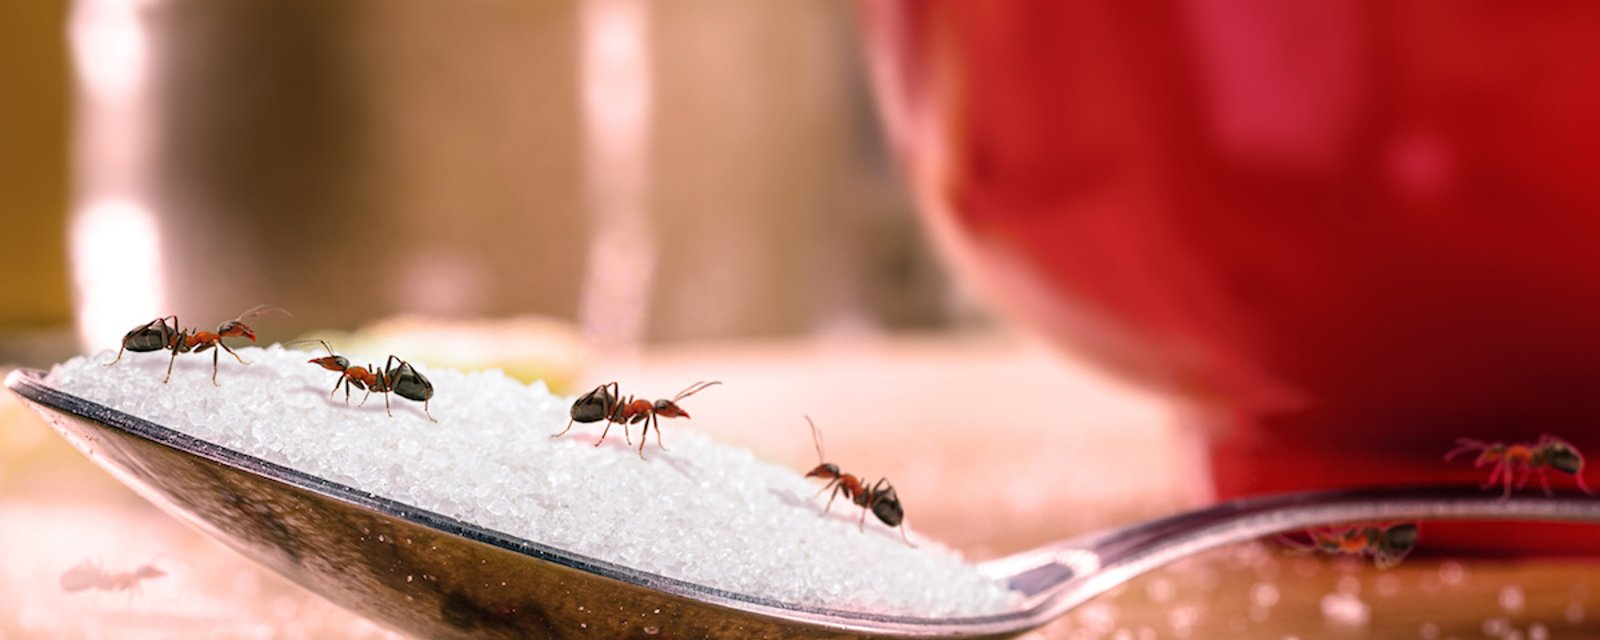 6 trucs naturels pour dire adieu aux fourmis chez vous